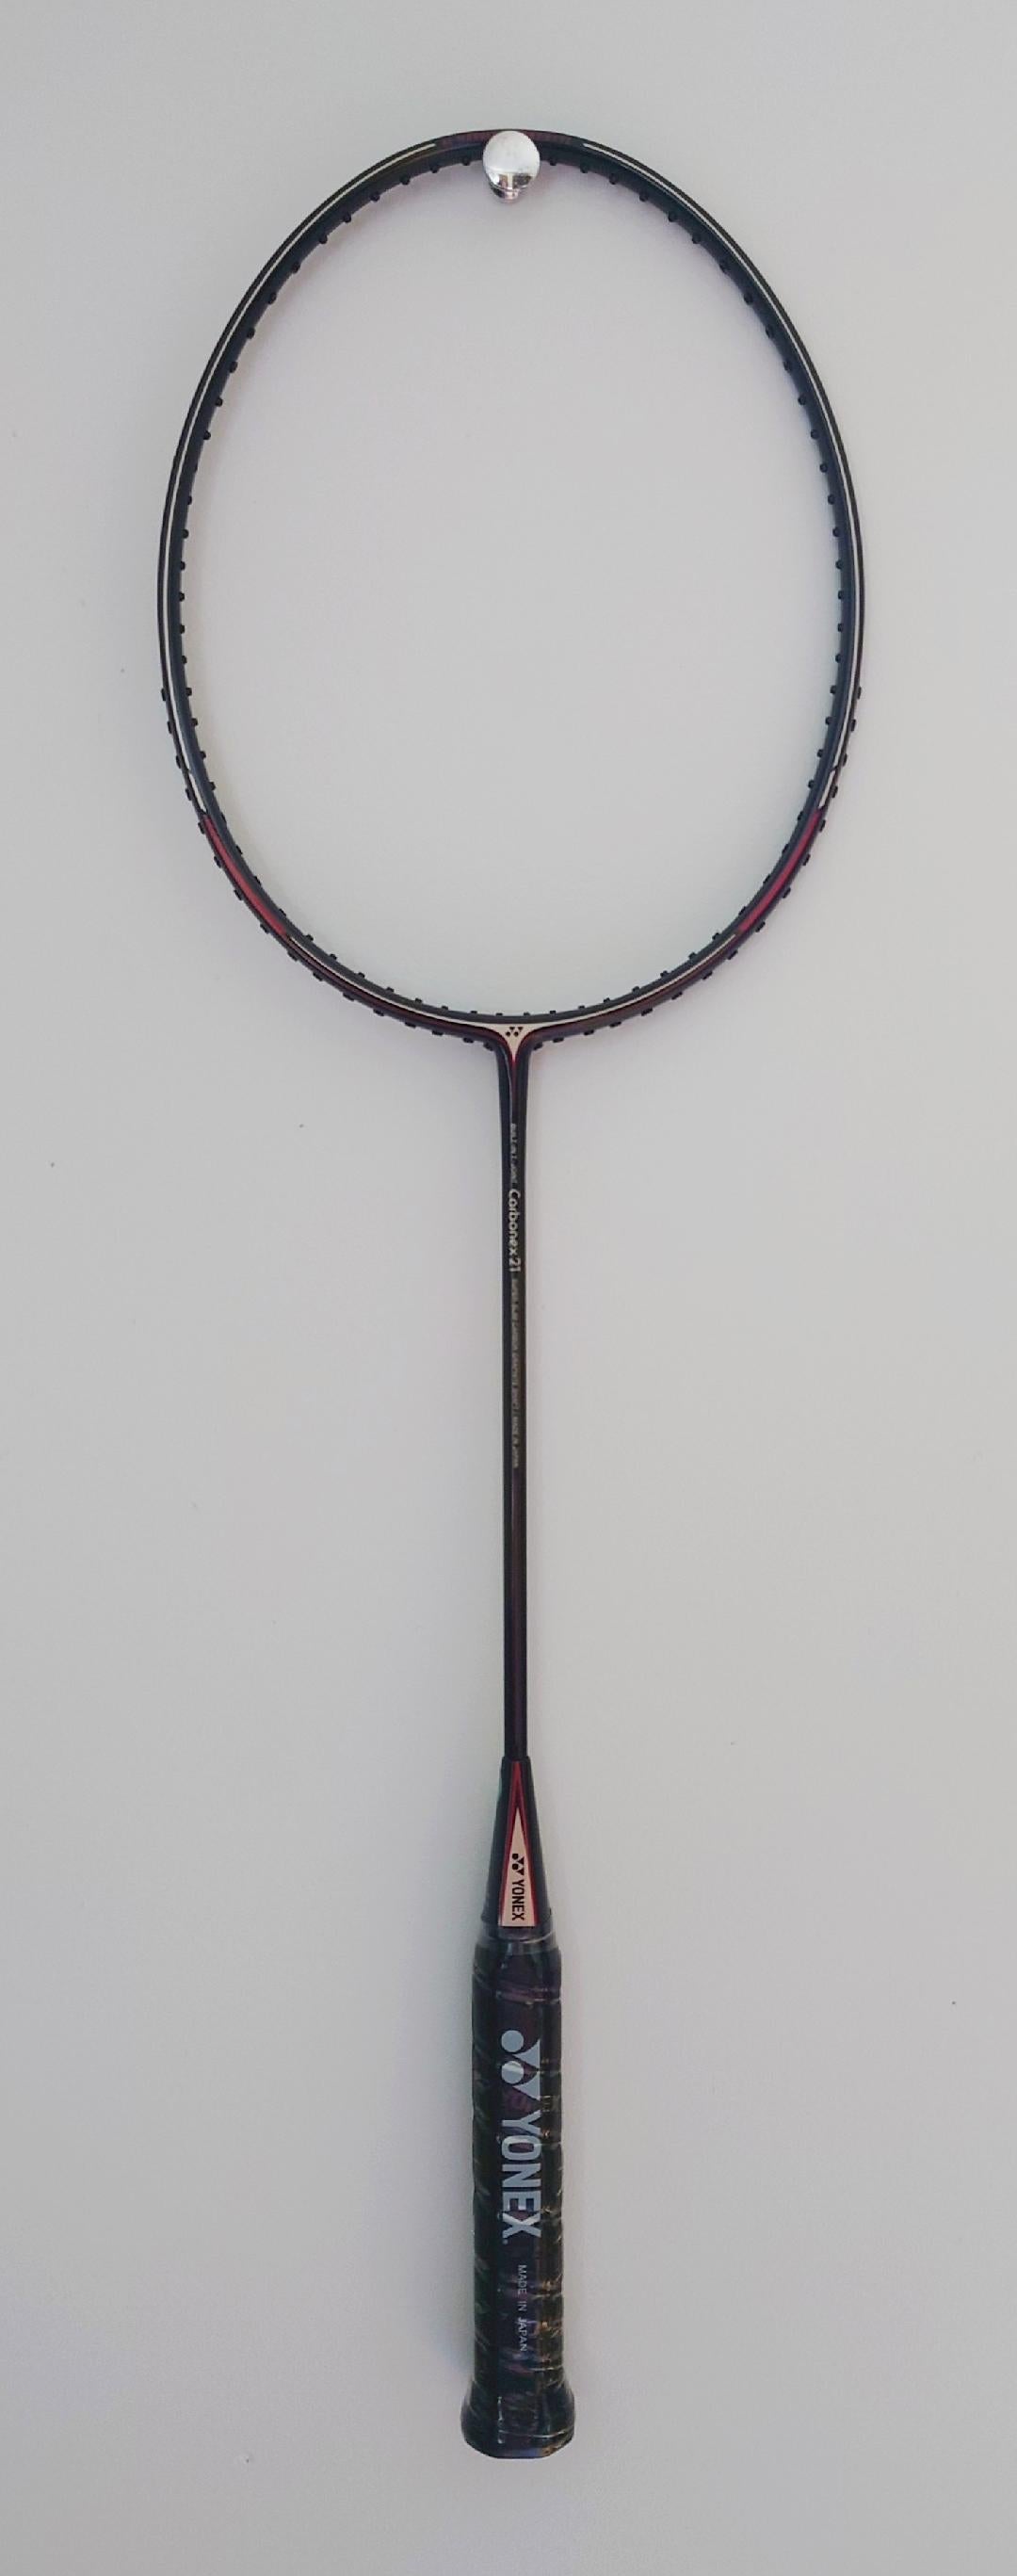 Yonex carbonex 21 badminton racket-